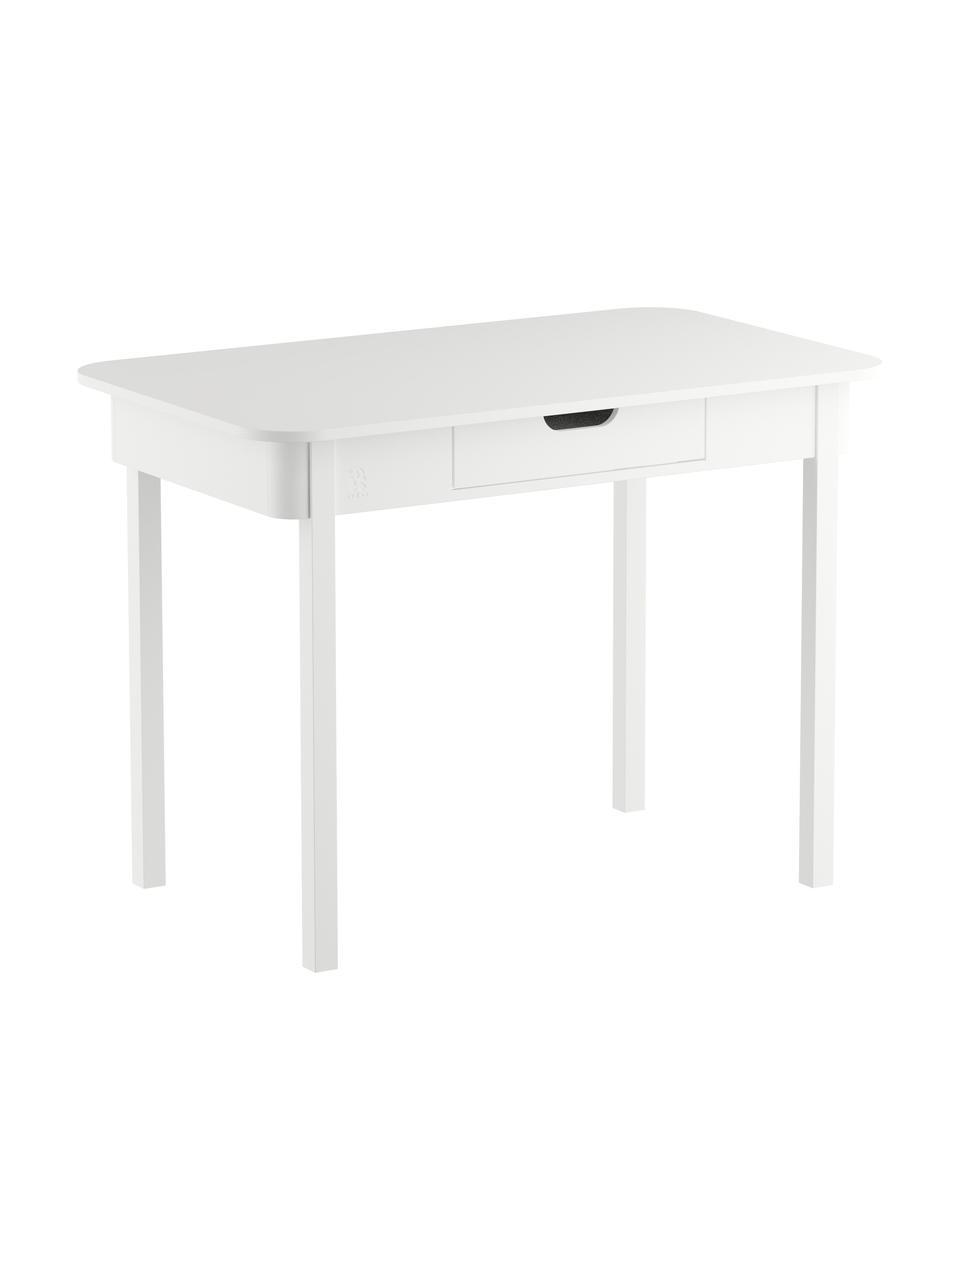 Dřevěný psací stůl Classic, Bukové dřevo, MDF deska (dřevovláknitá deska střední hustoty), Bílá, Š 100 cm, H 60 cm